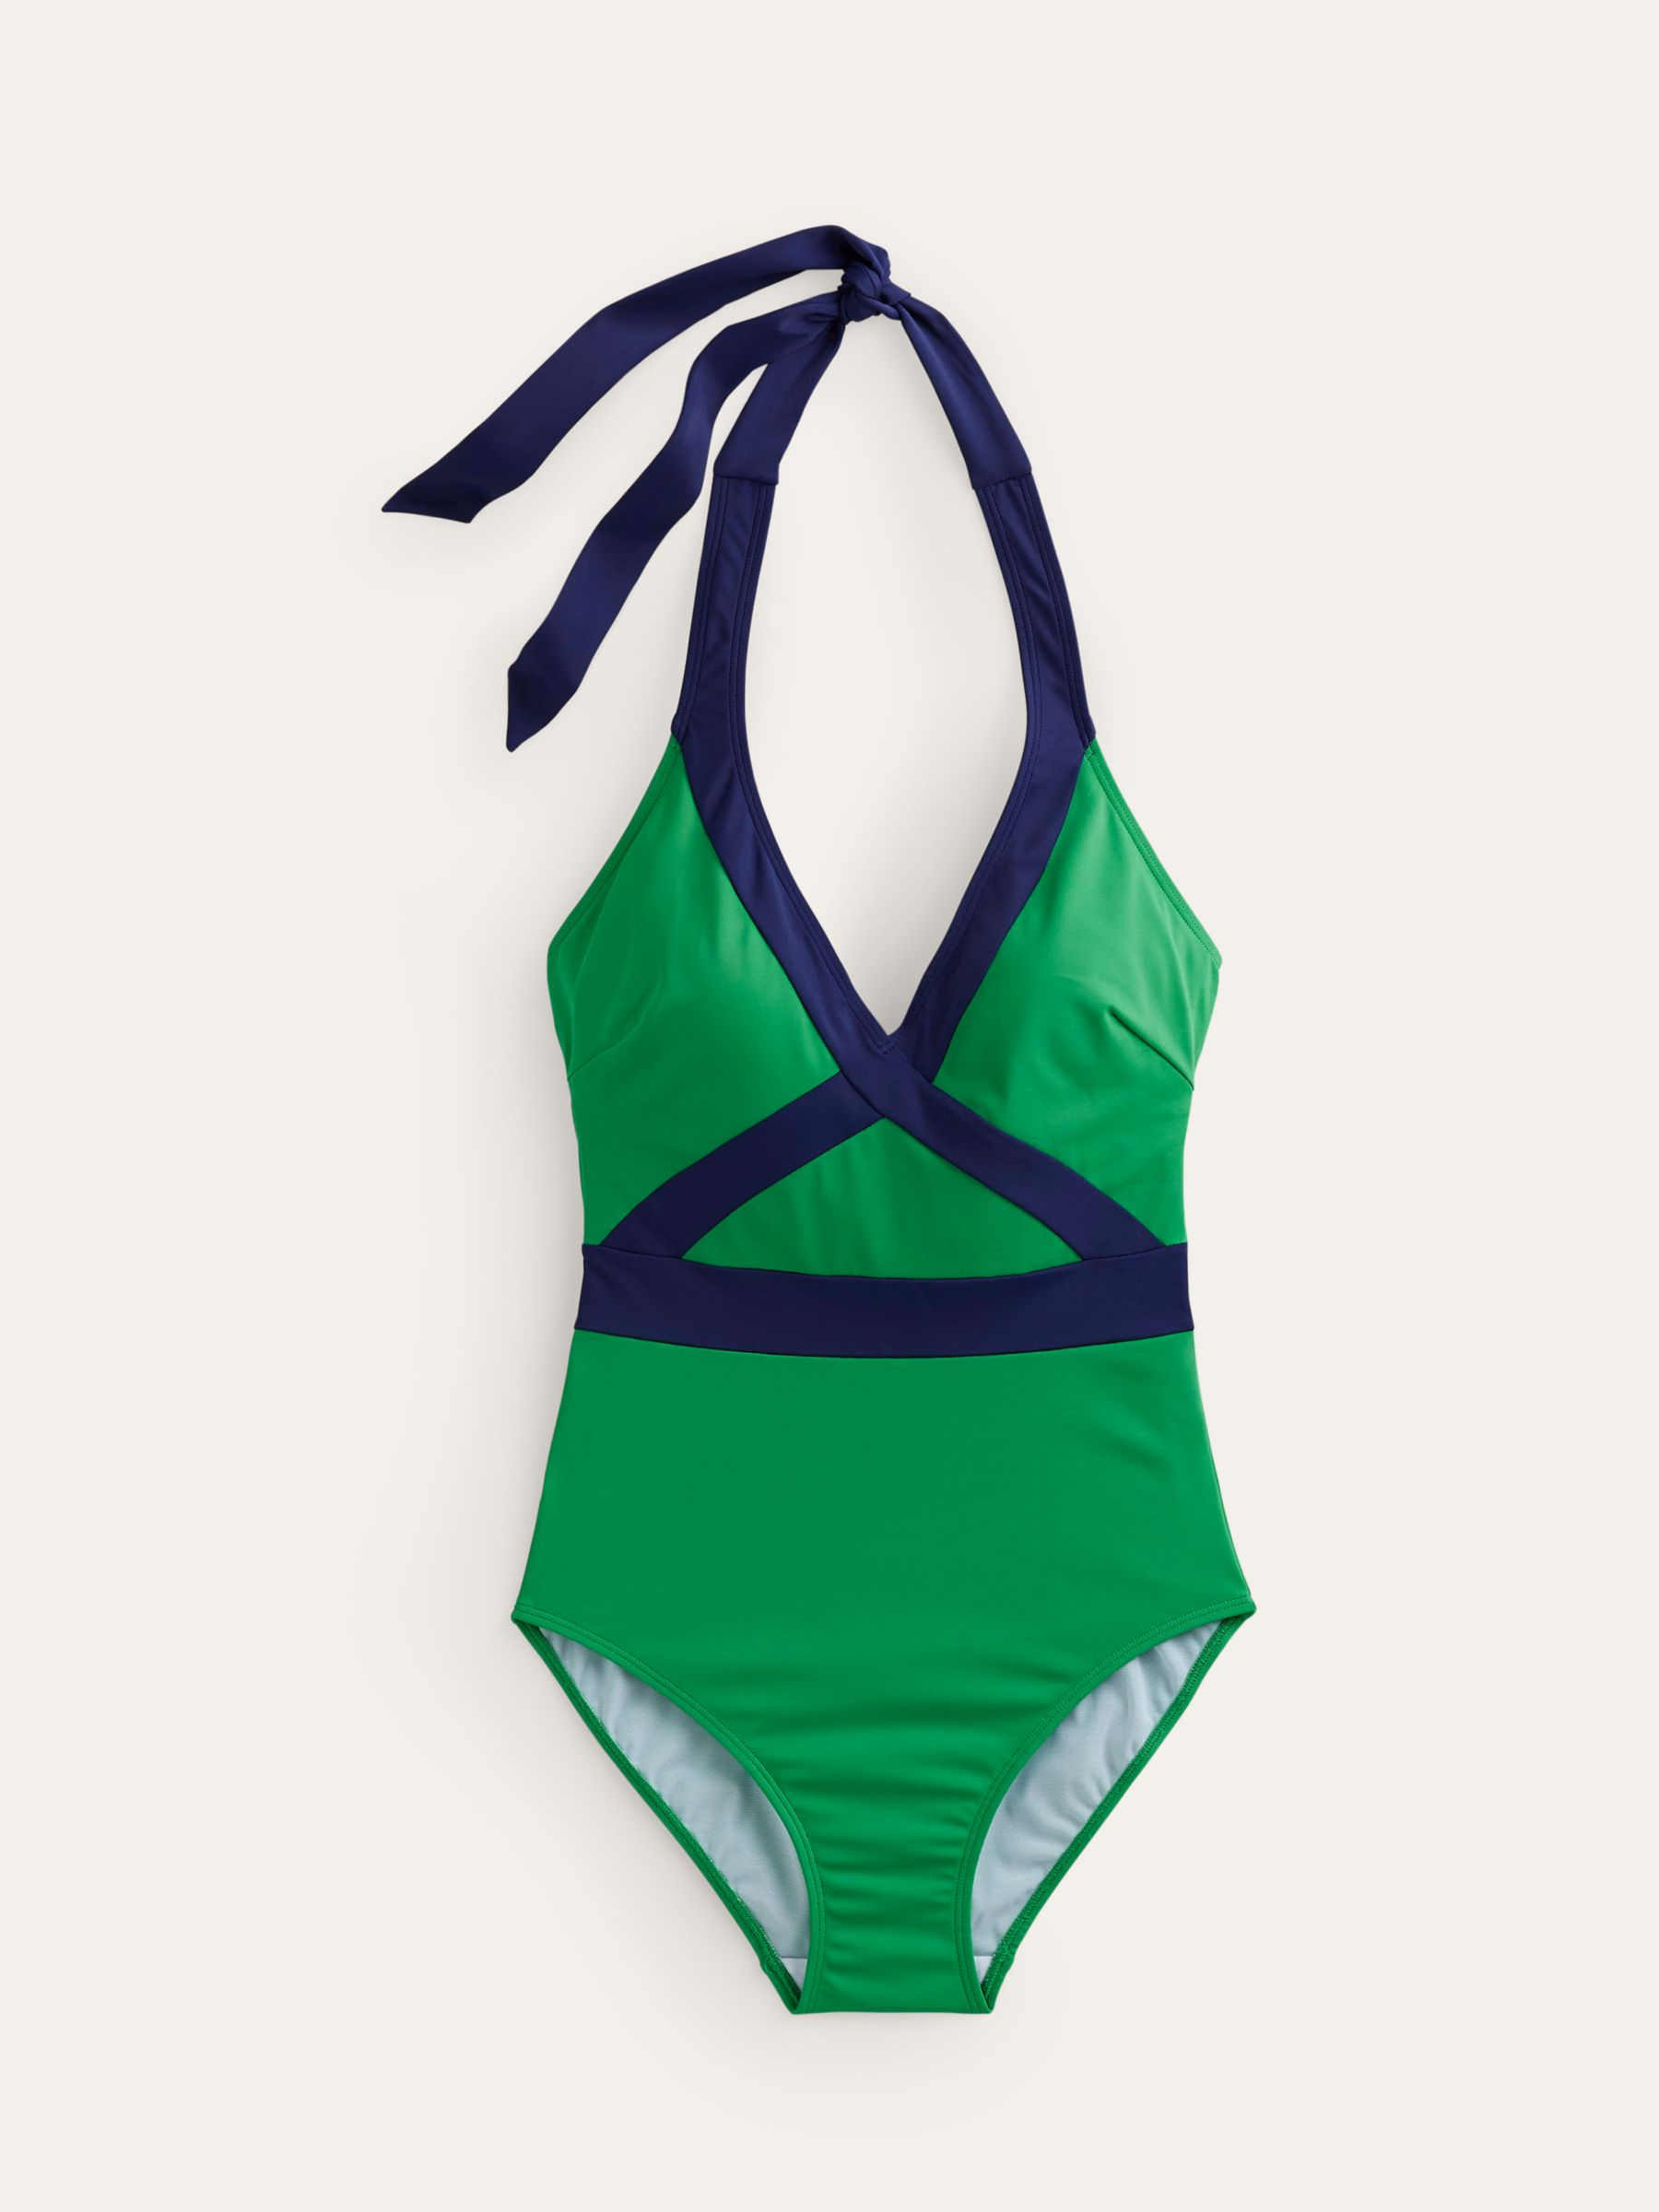 Boden Kefalonia Halterneck Swimsuit, Bright Green/Navy, 8